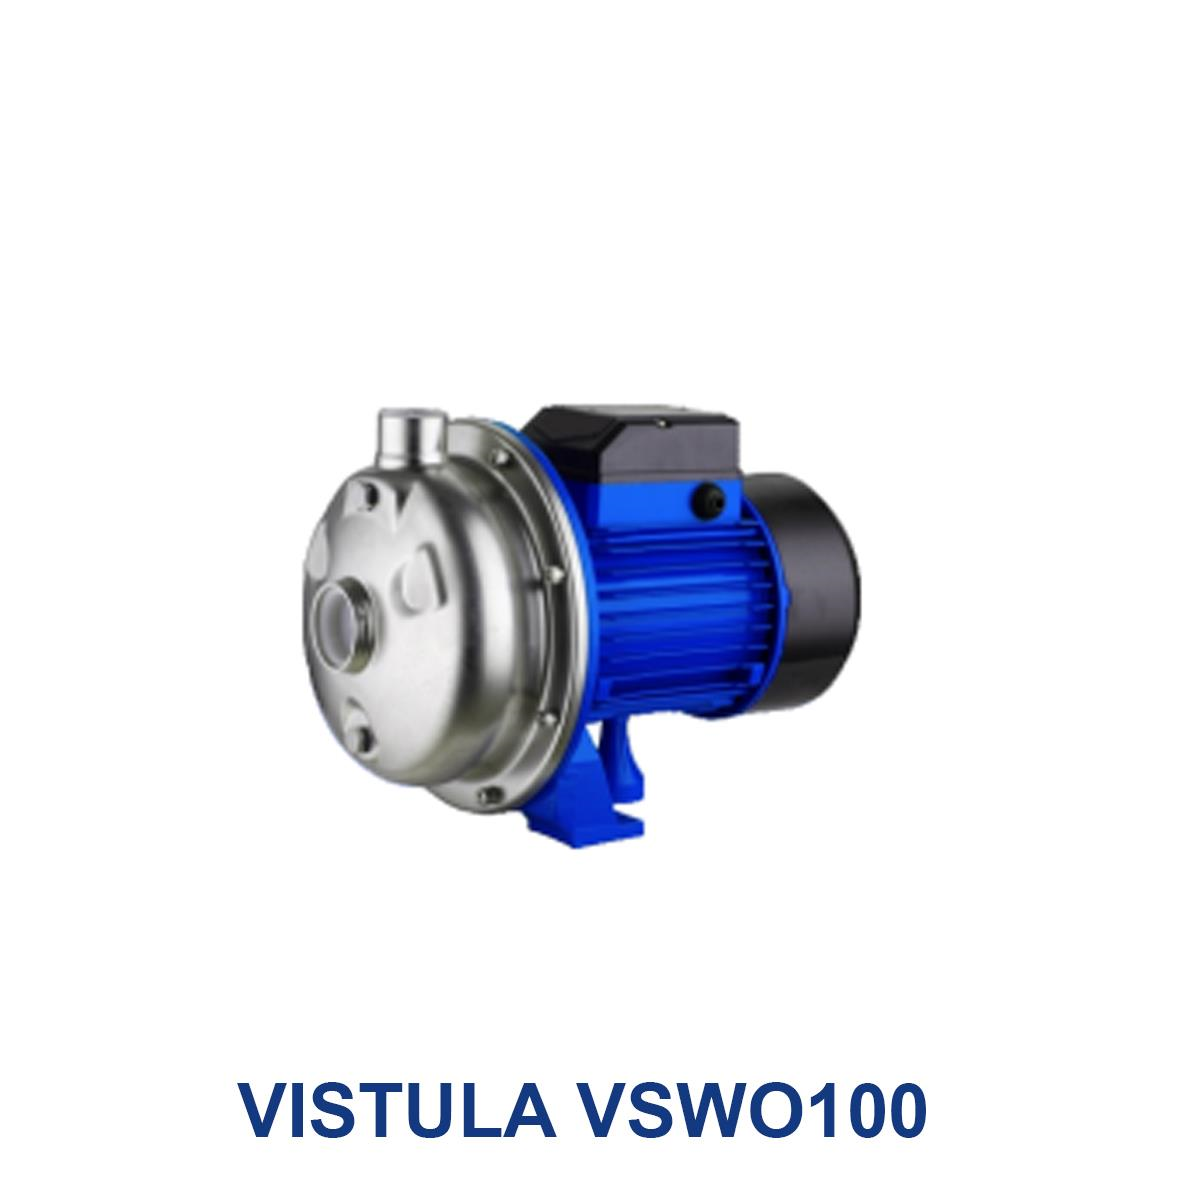 VISTULA-VSWO100